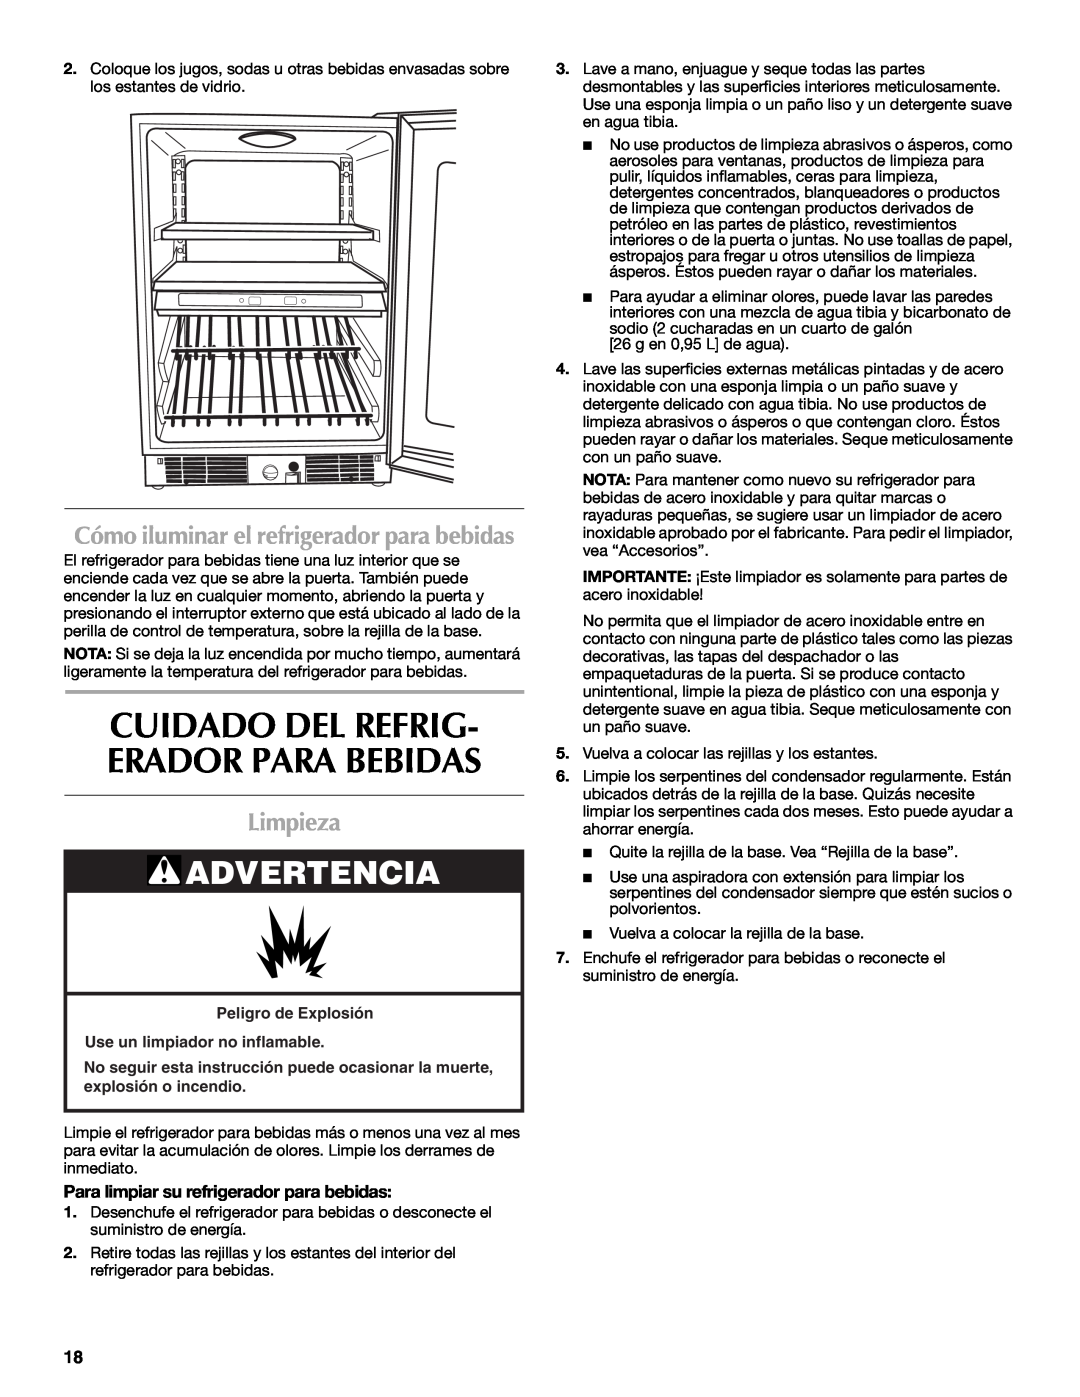 Maytag W10285880A - 8336411962010 Limpieza, Cómo iluminar el refrigerador para bebidas, Use un limpiador no inflamable 